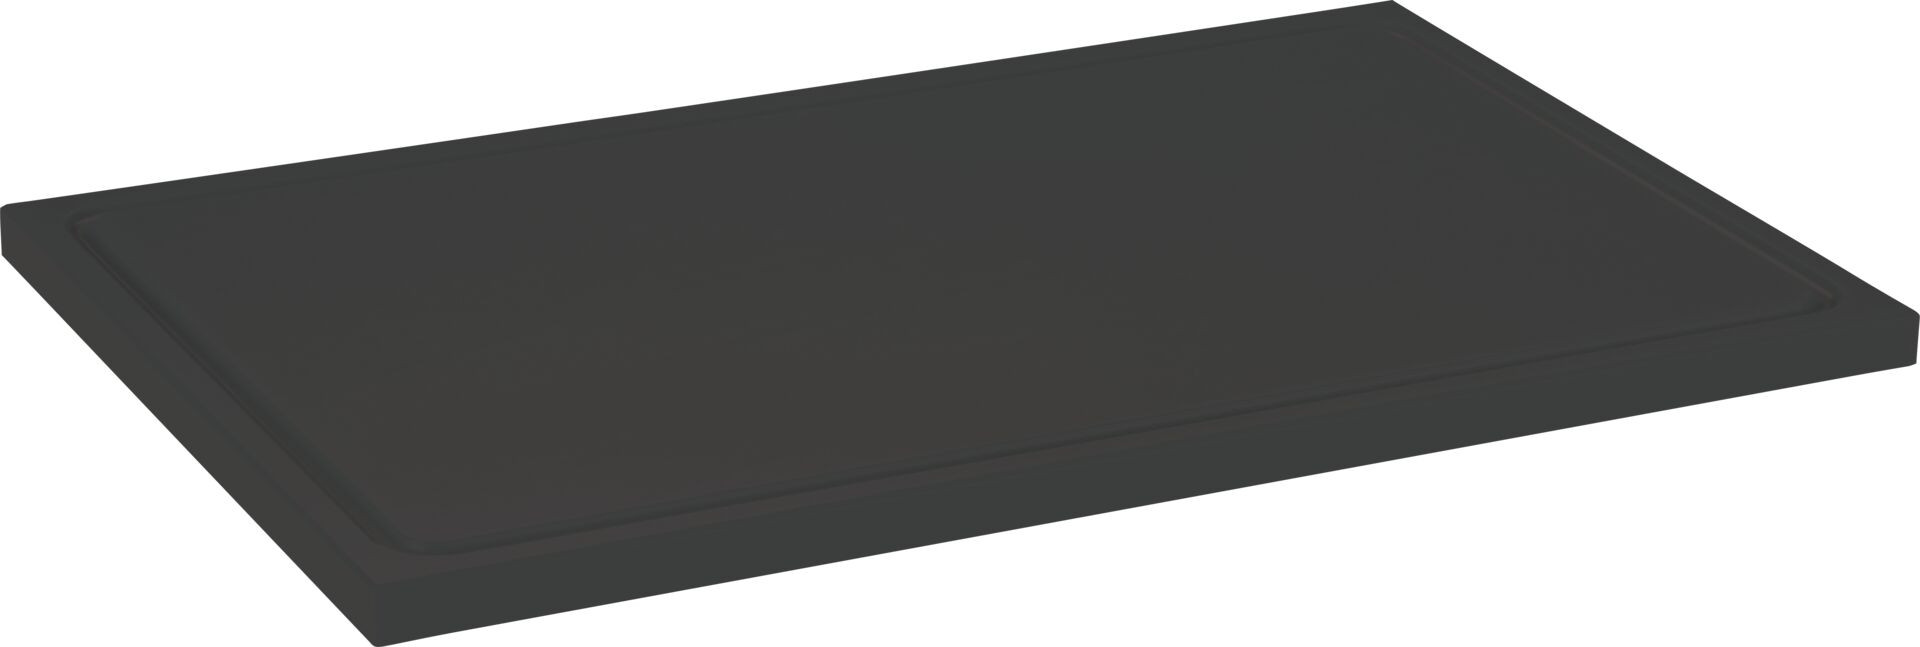 Schneidbrett mit Saftrille schwarz 30x20x1,2cm